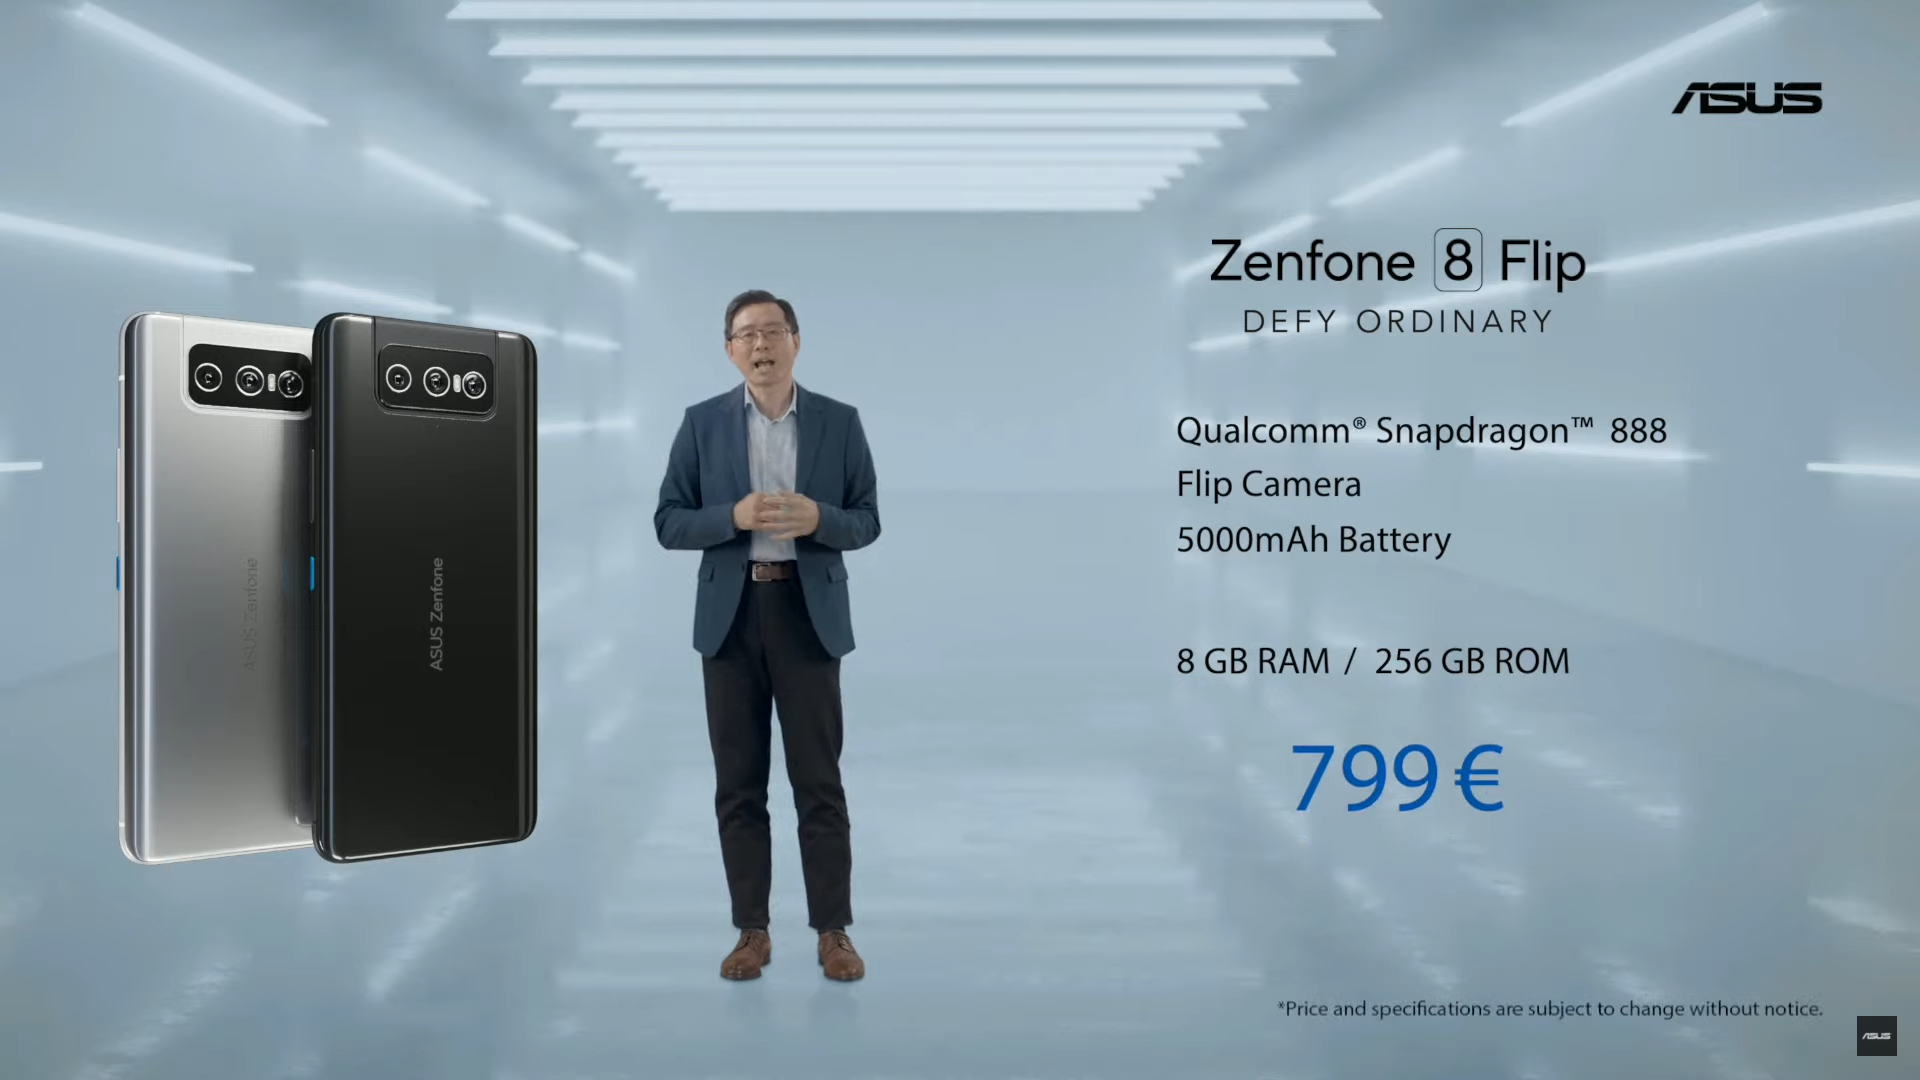 Asus Zenfone 8 Flip Price